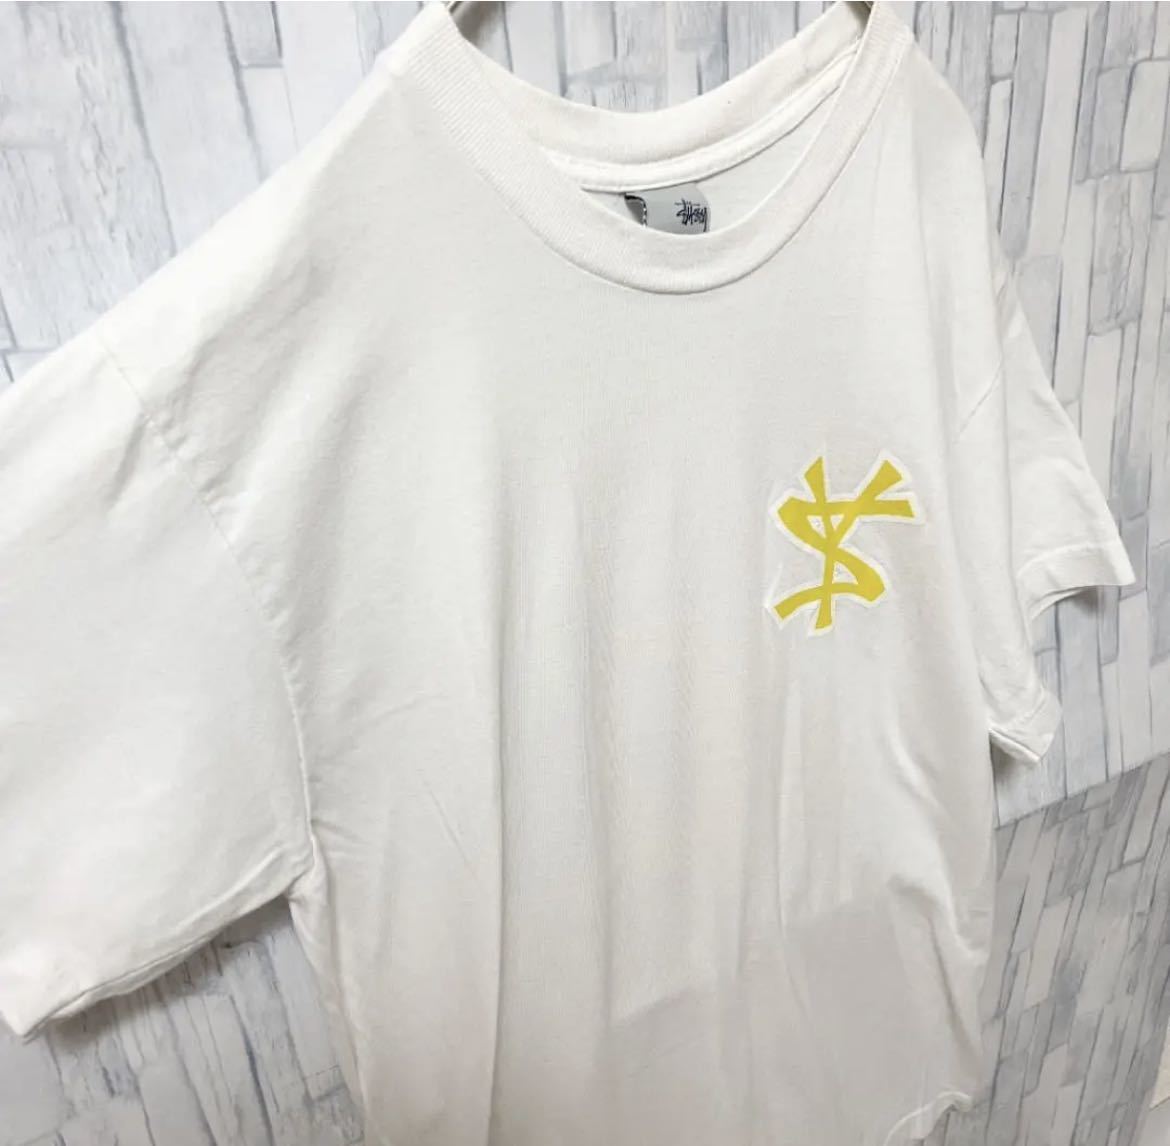 old stussy オールド ステューシー 00s 2000年代 ホワイト 半袖 Tシャツ ビッグロゴ デカロゴ ビッグプリント サイズL USA製  銀タグ